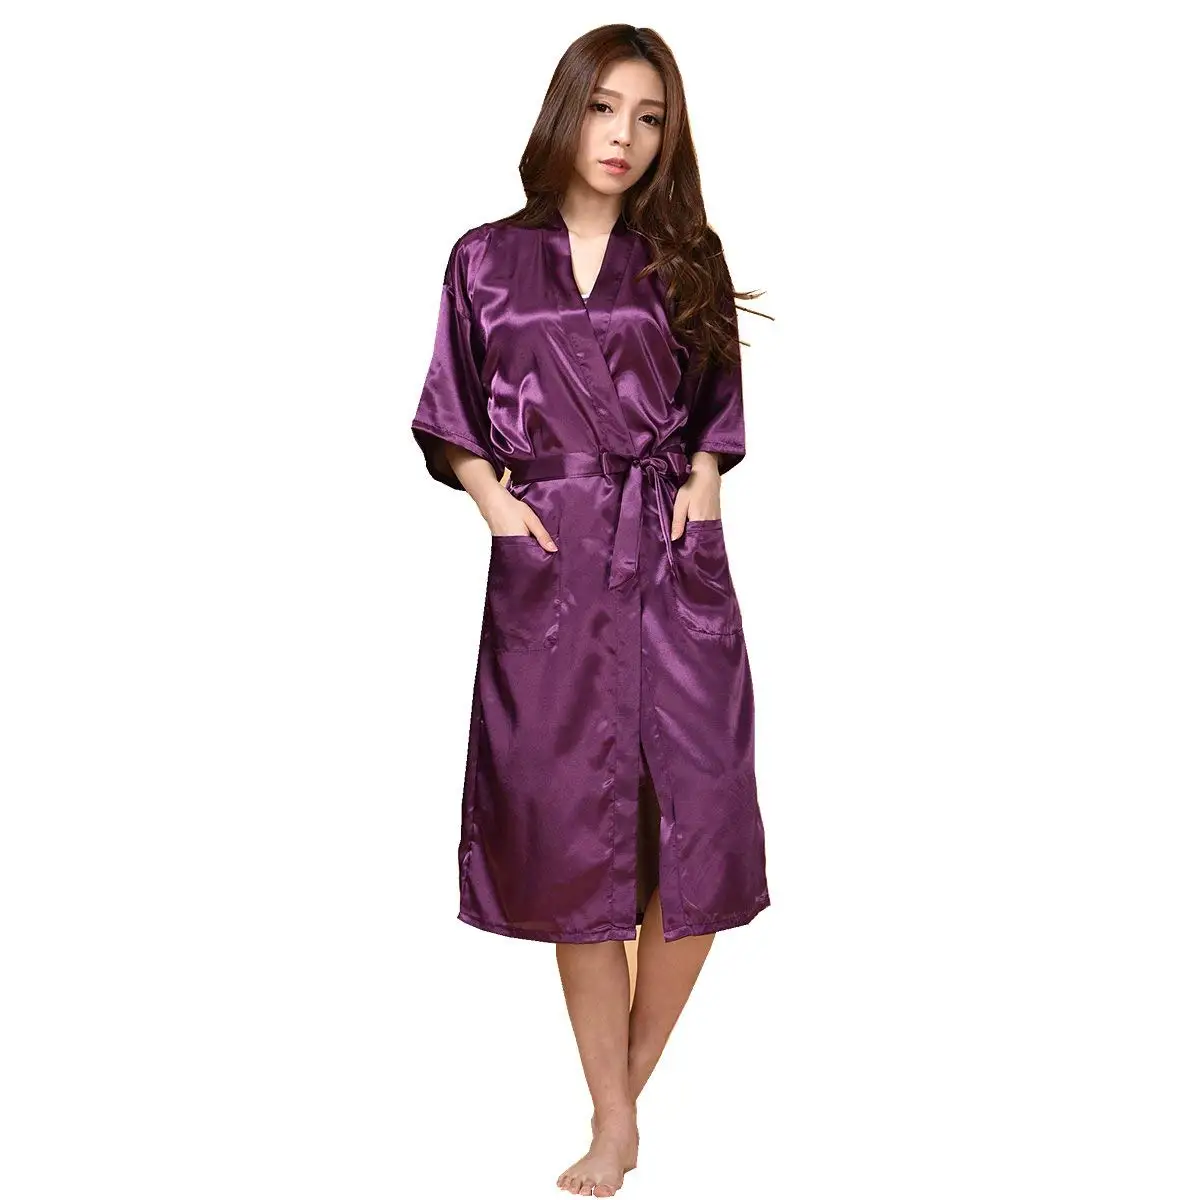 Cheap Purple Pajamas, find Purple Pajamas deals on line at Alibaba.com